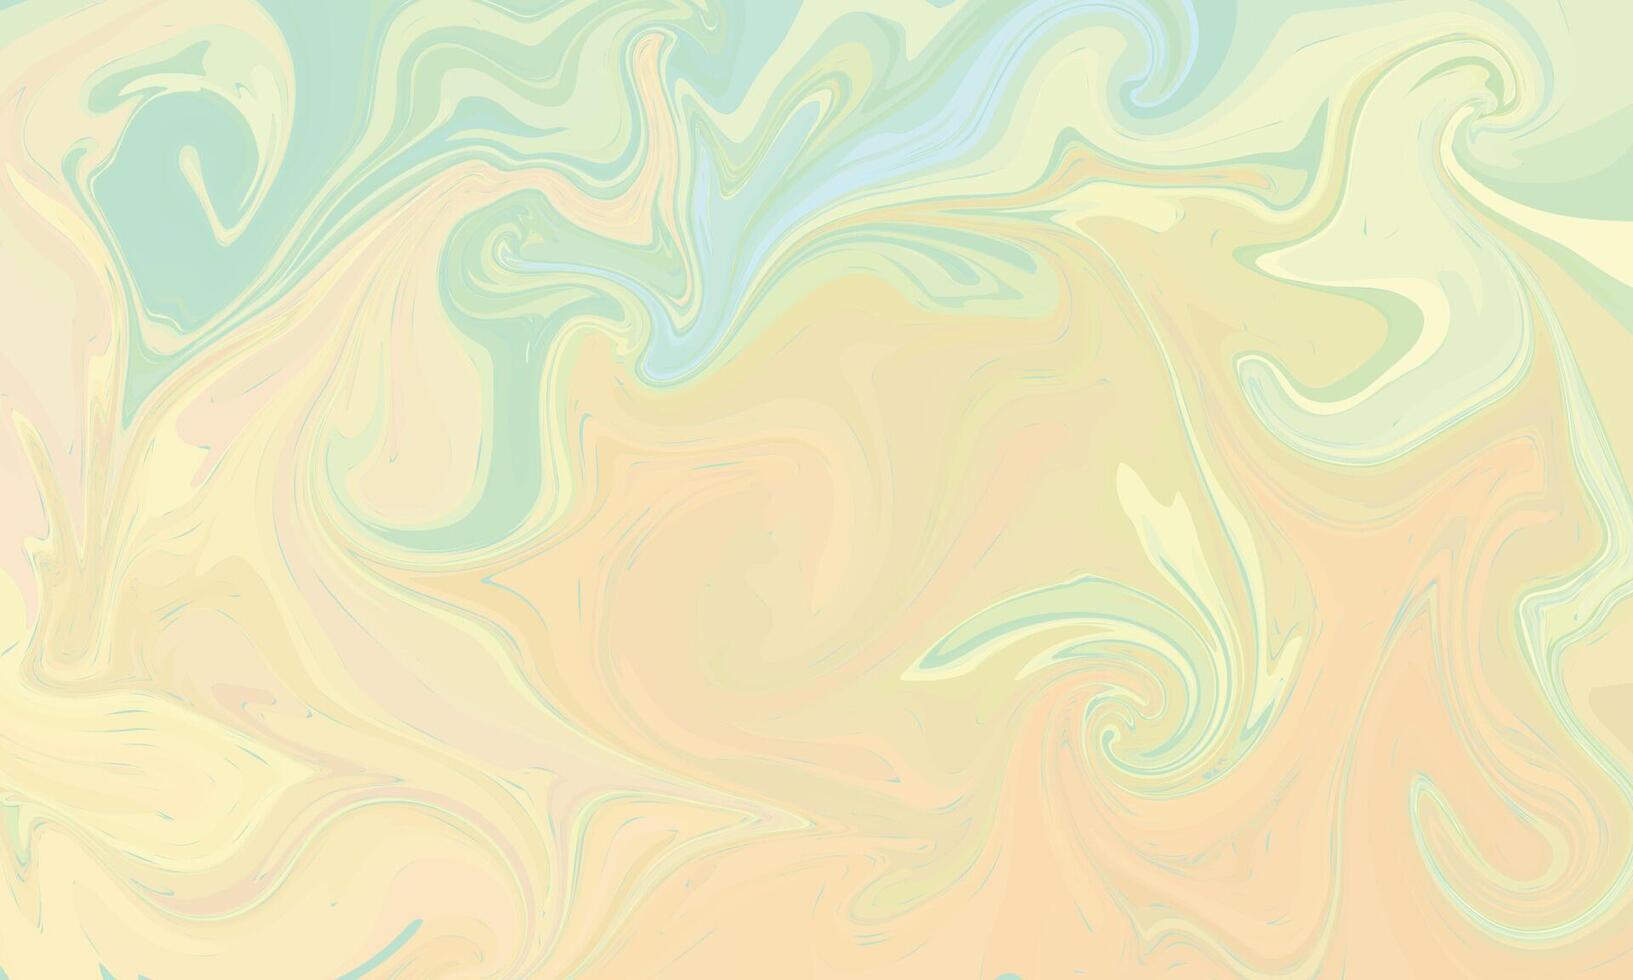 flerfärgad färgrik bakgrund i akryl häller vektor